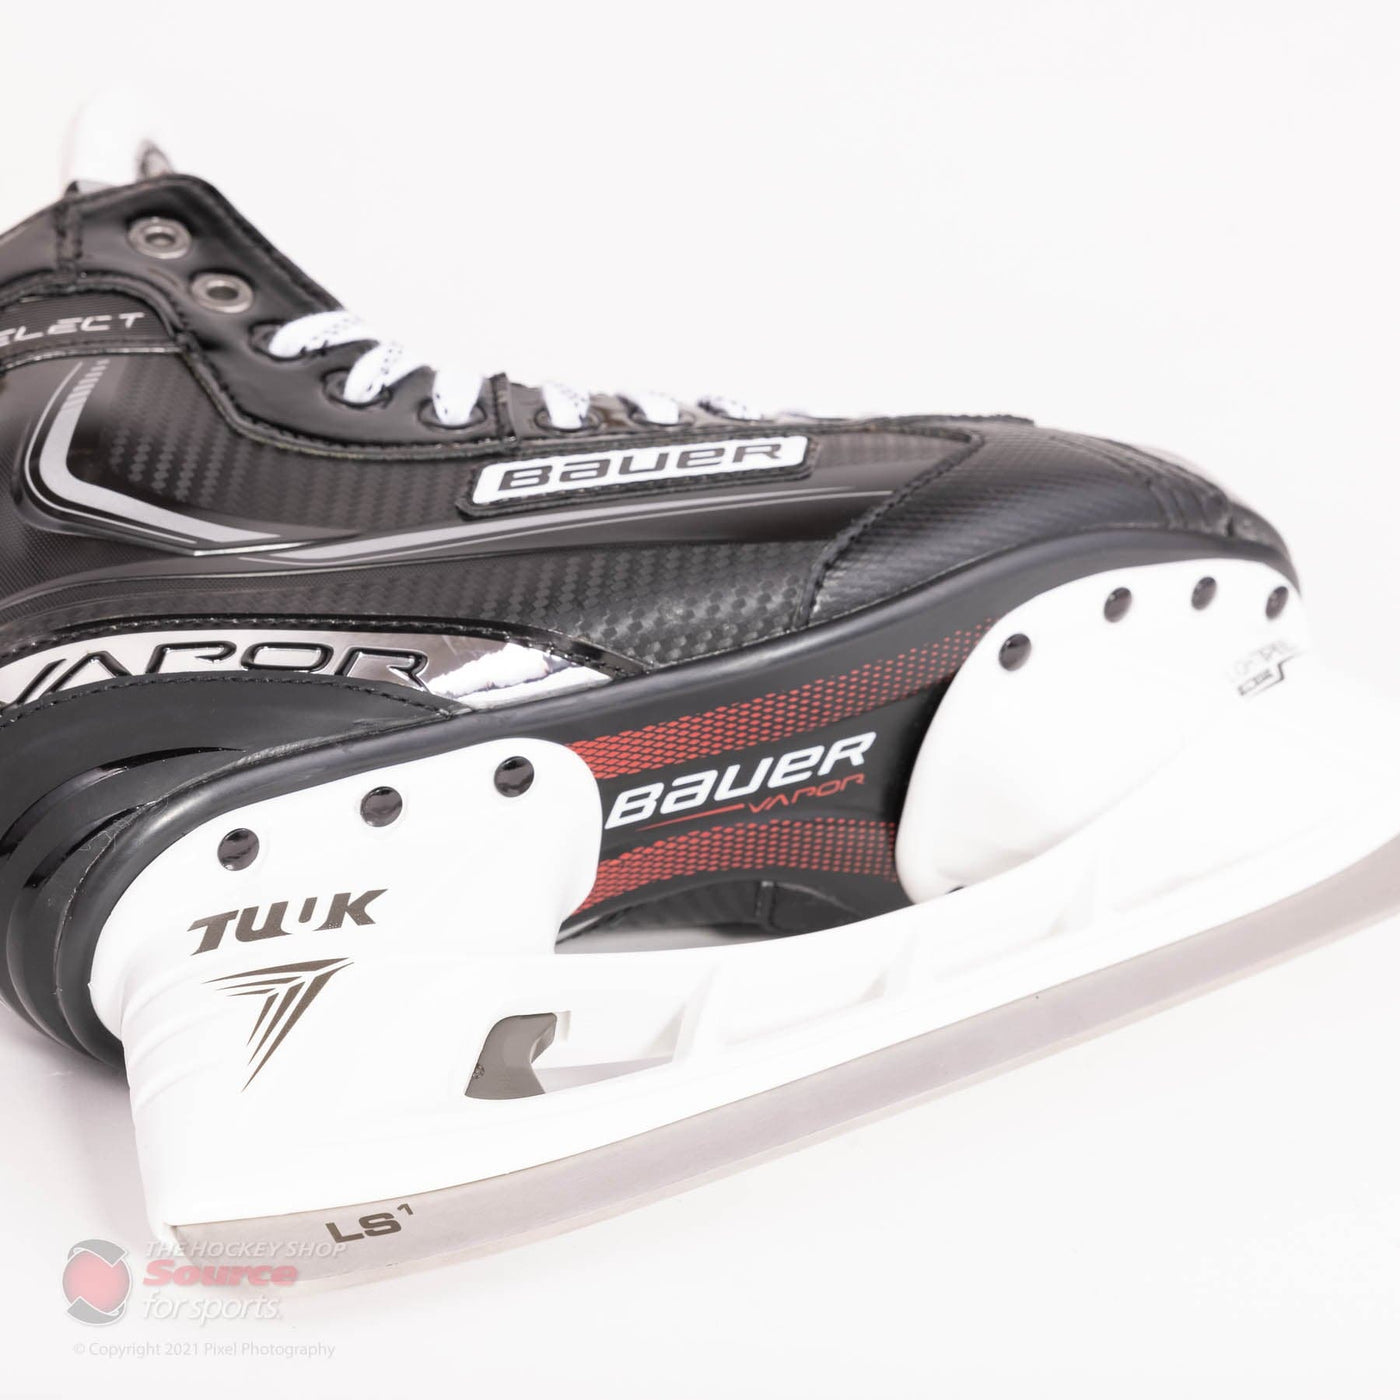 Bauer Vapor X Select Junior Hockey Skates